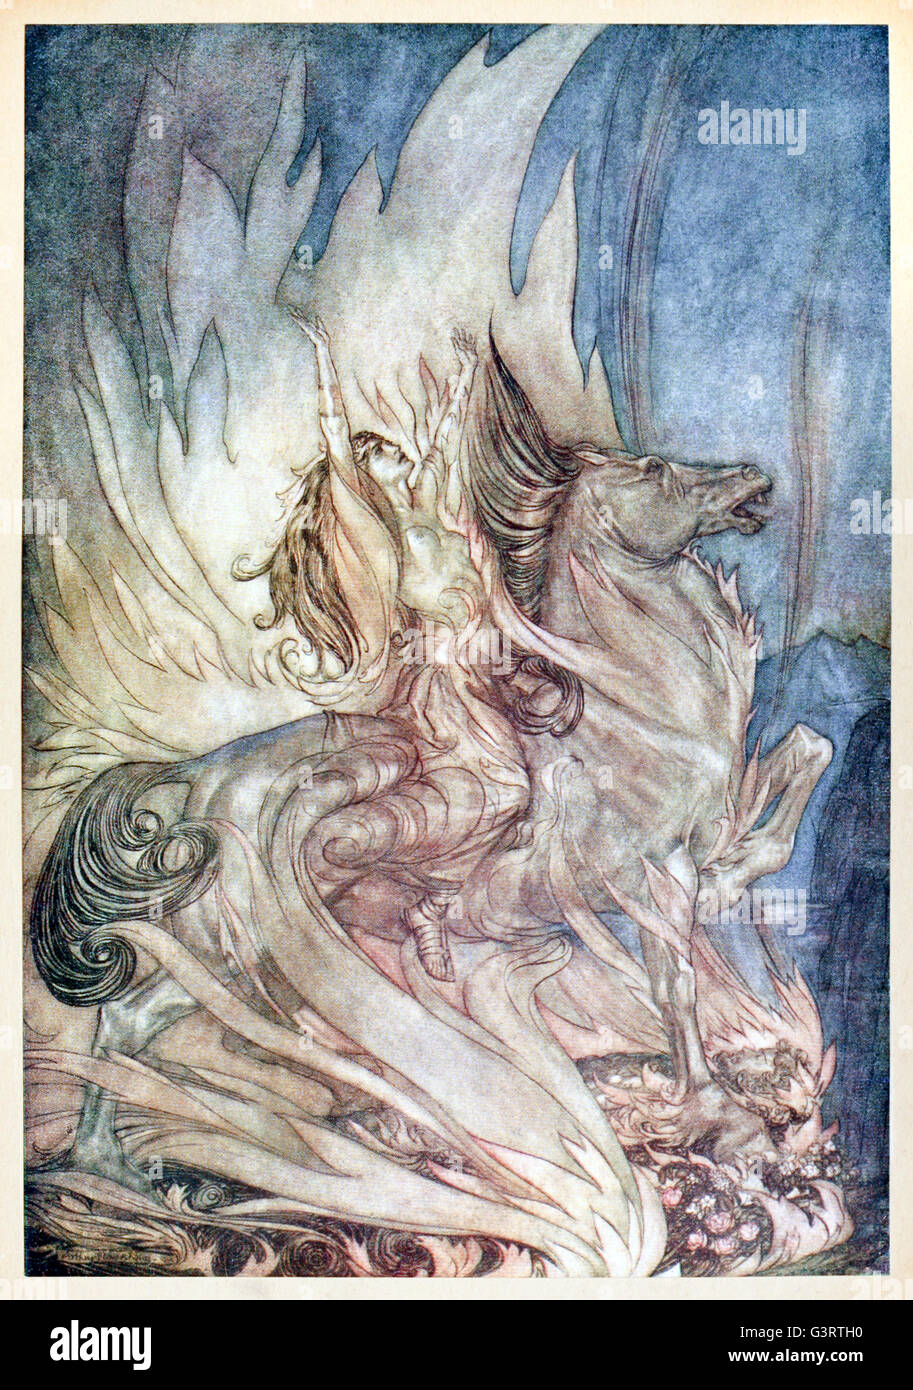 "Brunnhilde sur Grane bondit sur le bûcher funéraire de Siegfried" de Siegfried "& Le Crépuscule des dieux' illustré par Arthur Rackham (1867-1939). Voir la description pour plus d'informations. Banque D'Images